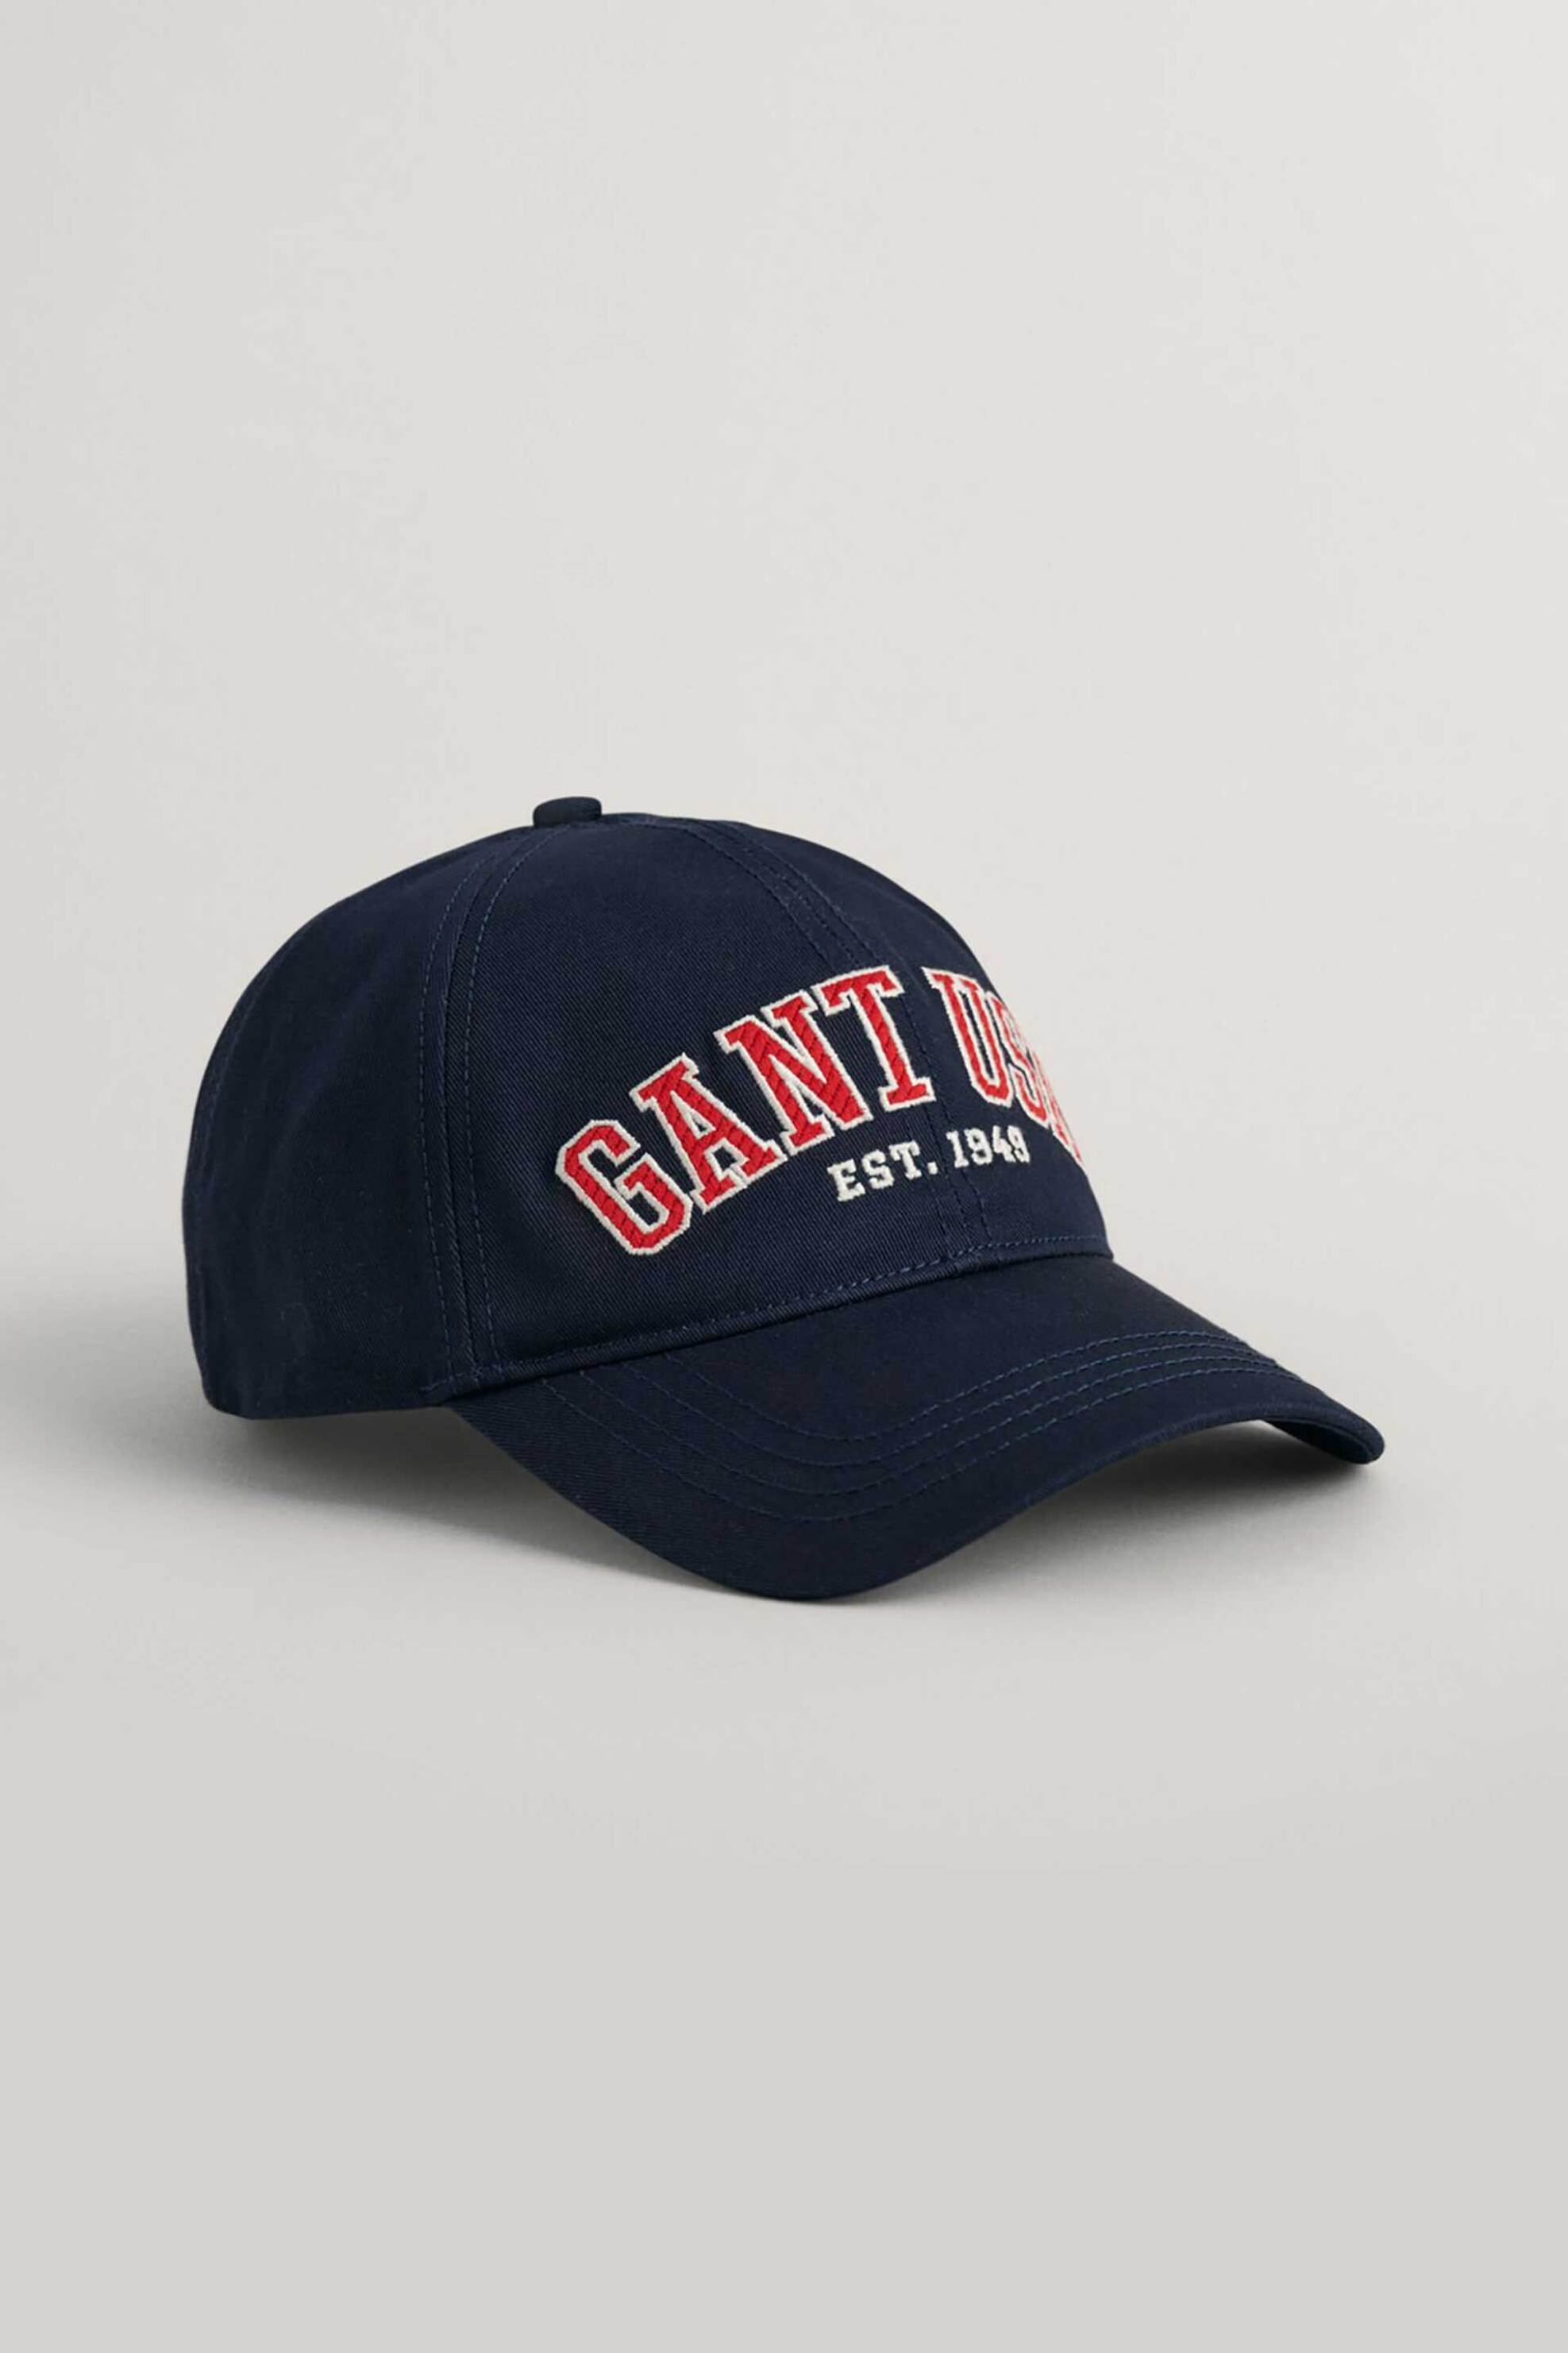 Ανδρική Μόδα > Ανδρικά Αξεσουάρ > Ανδρικά Καπέλα & Σκούφοι Gant ανδρικό καπέλο με logo graphic print "USA" - 9900215 Μπλε Σκούρο